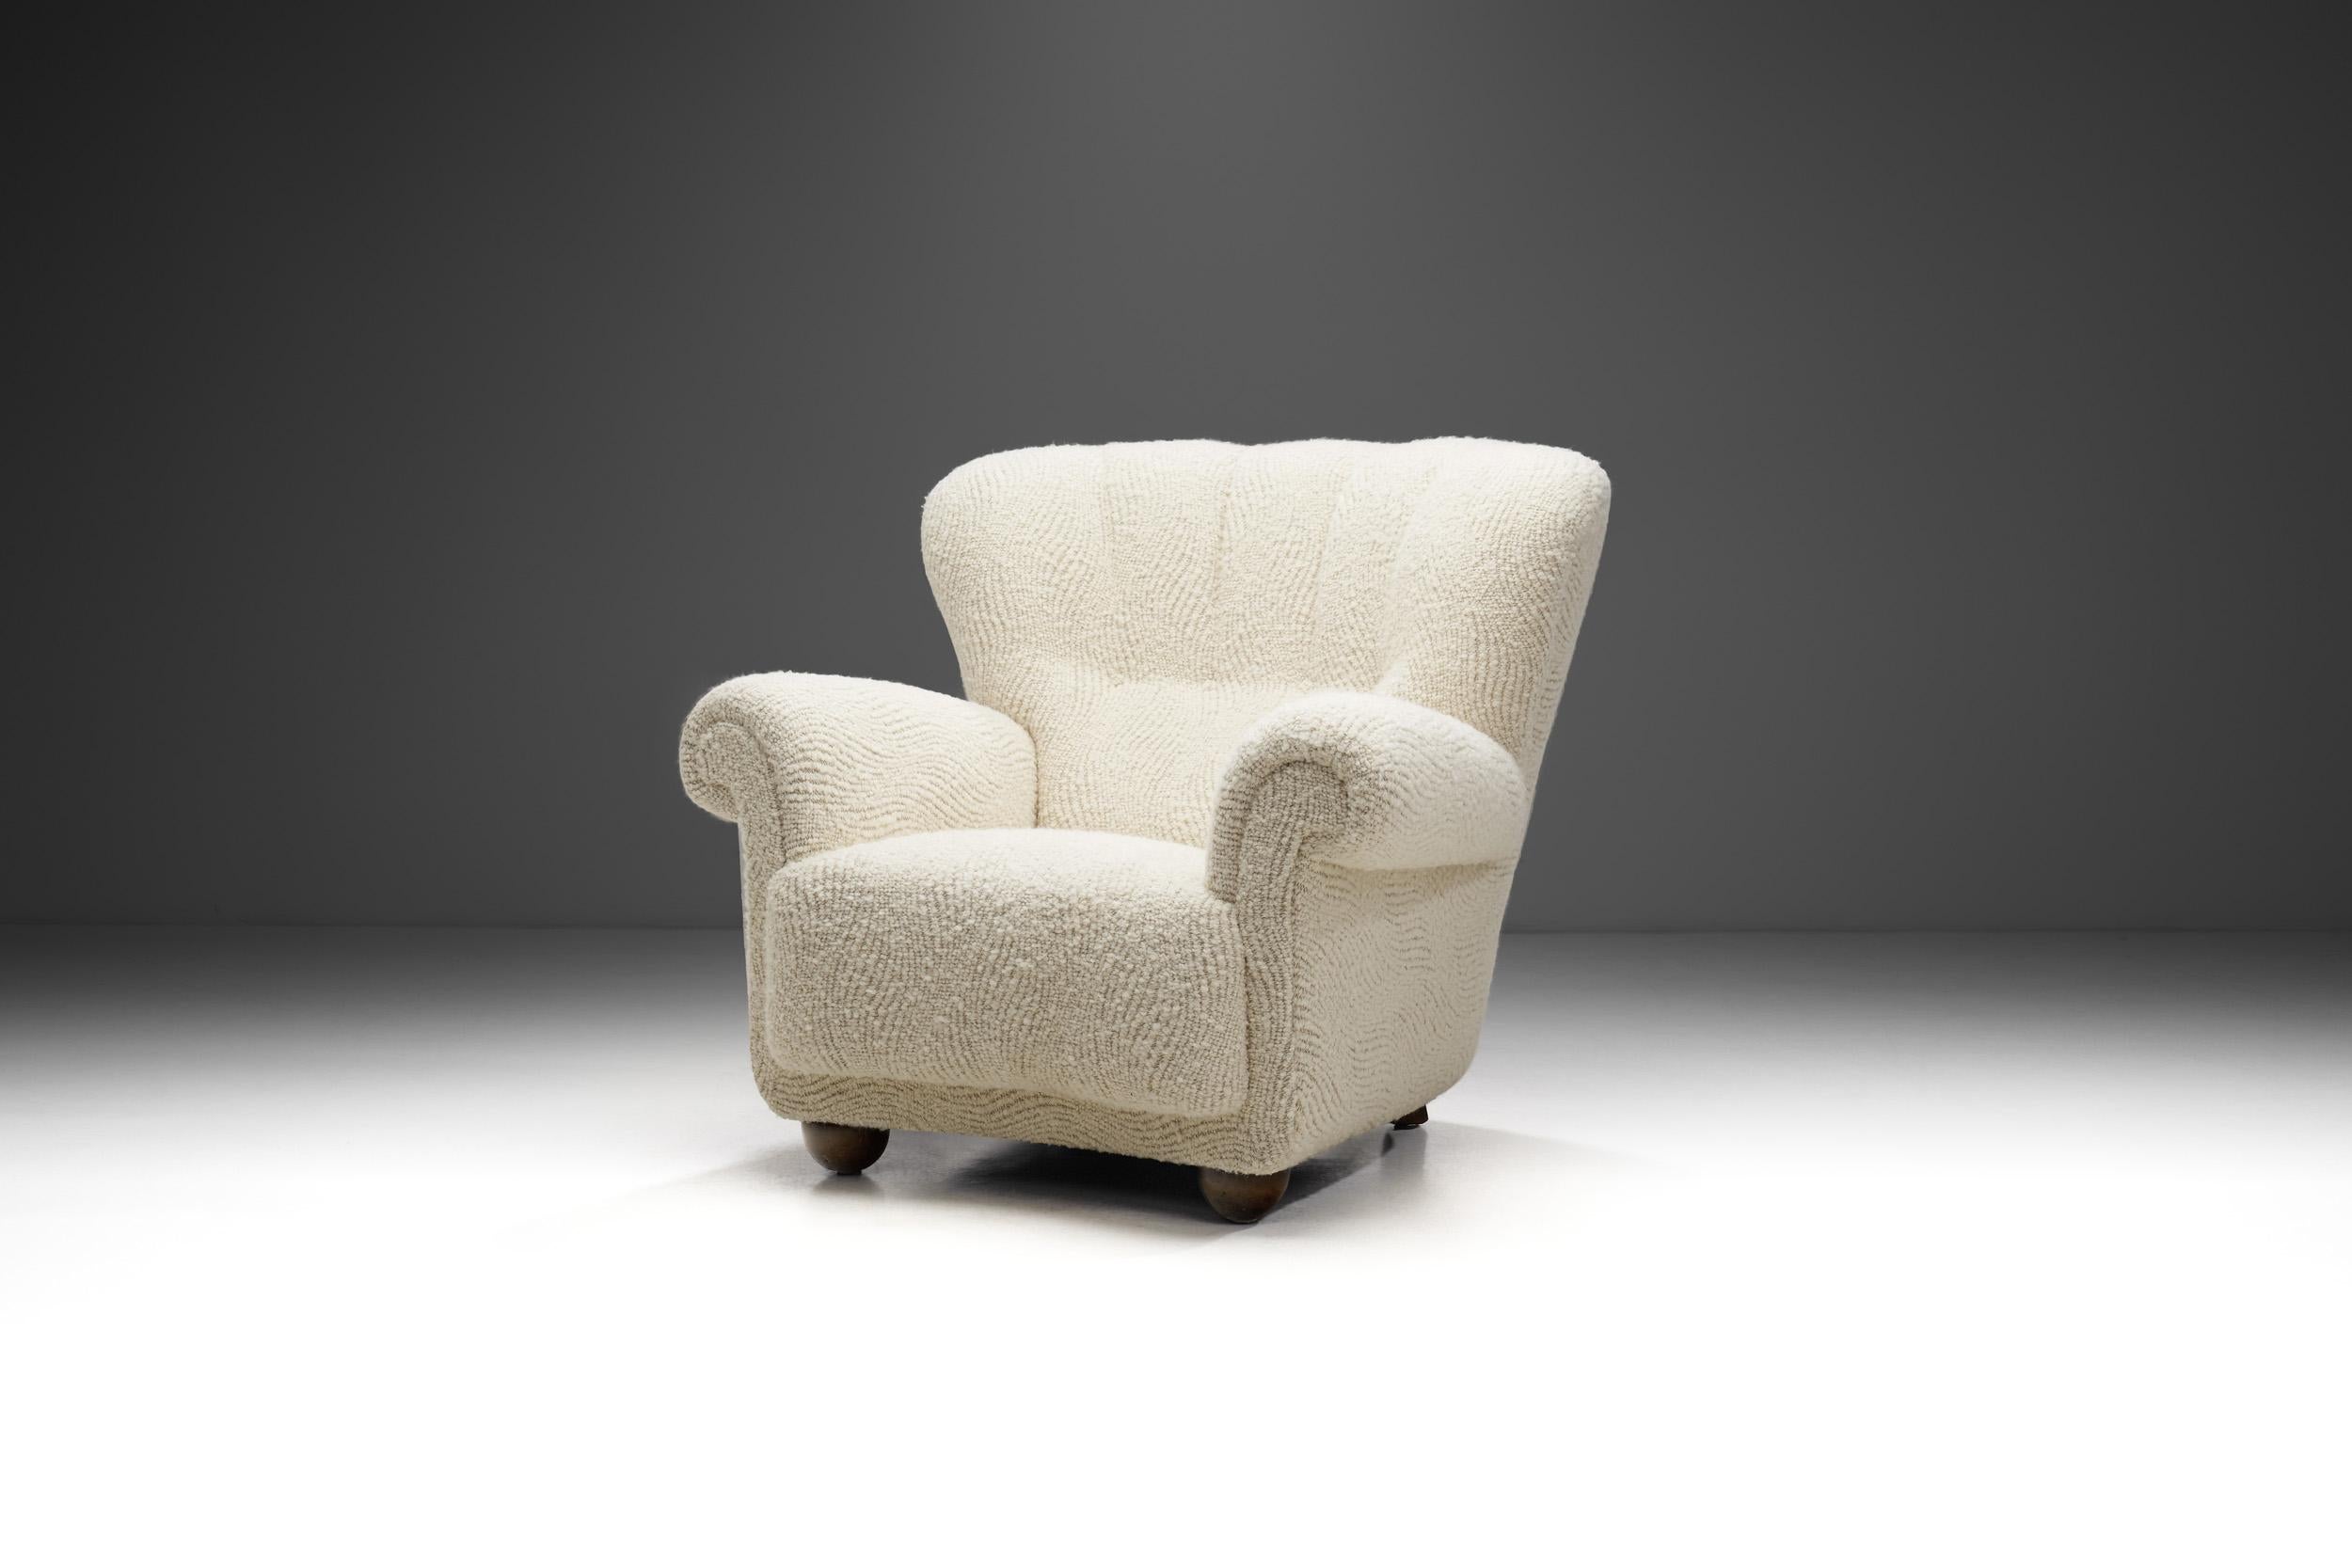 Cette magnifique chaise longue d'ébéniste danois rappelle l'apogée du design moderne danois du milieu du siècle dernier. Grâce à sa forme incurvée, ce modèle est exceptionnellement douillet et élégant. Les chaises incurvées comme celle-ci sont des